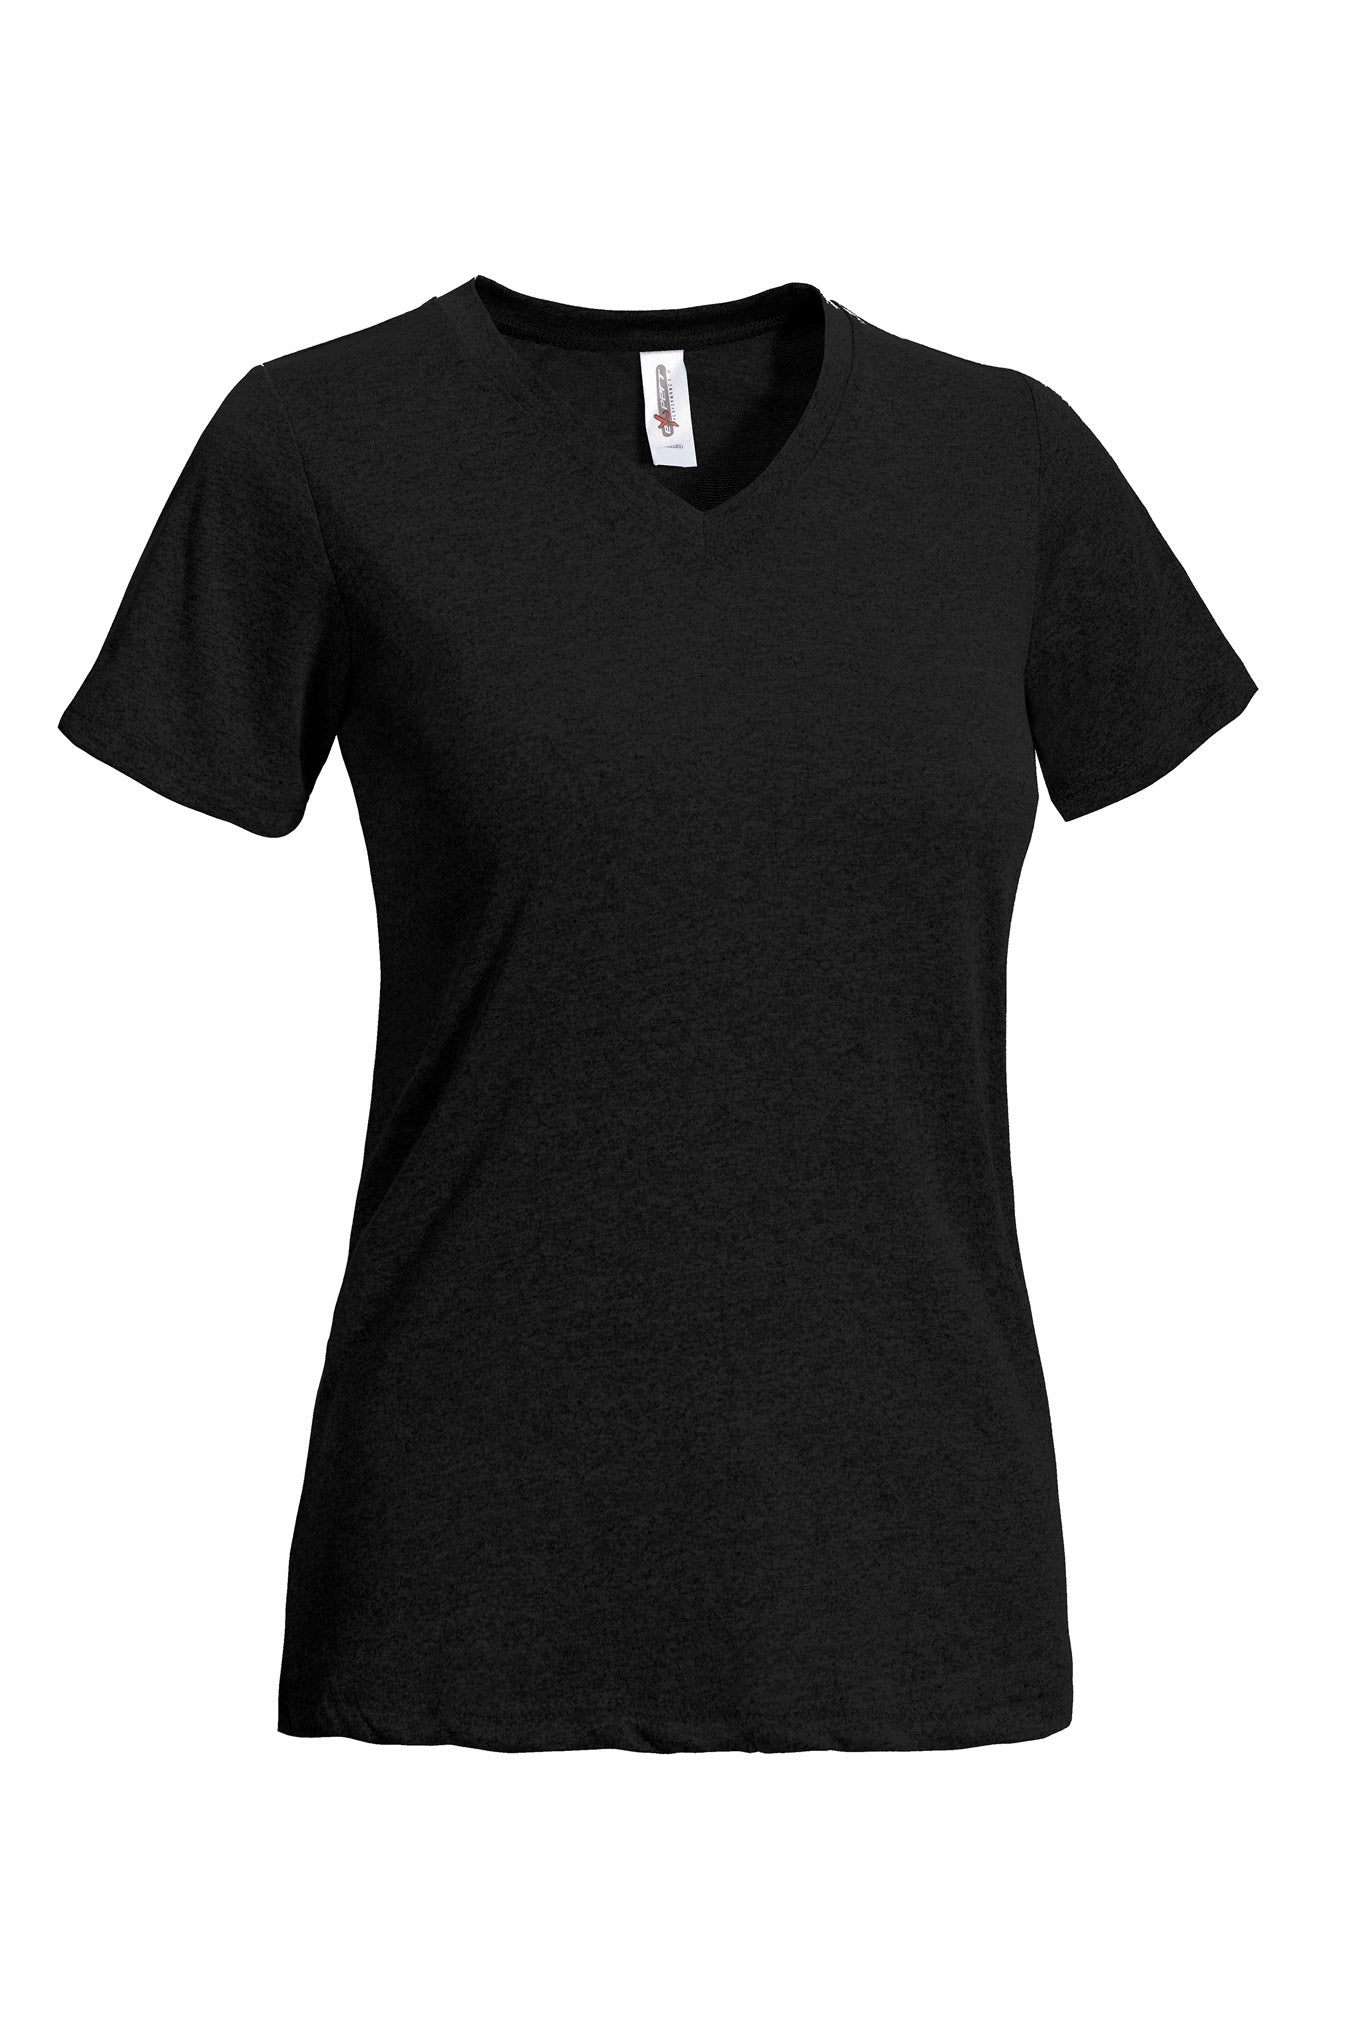 Expert Brand Women's Natural Feel V-Neck T-Shirt in Black#color_black